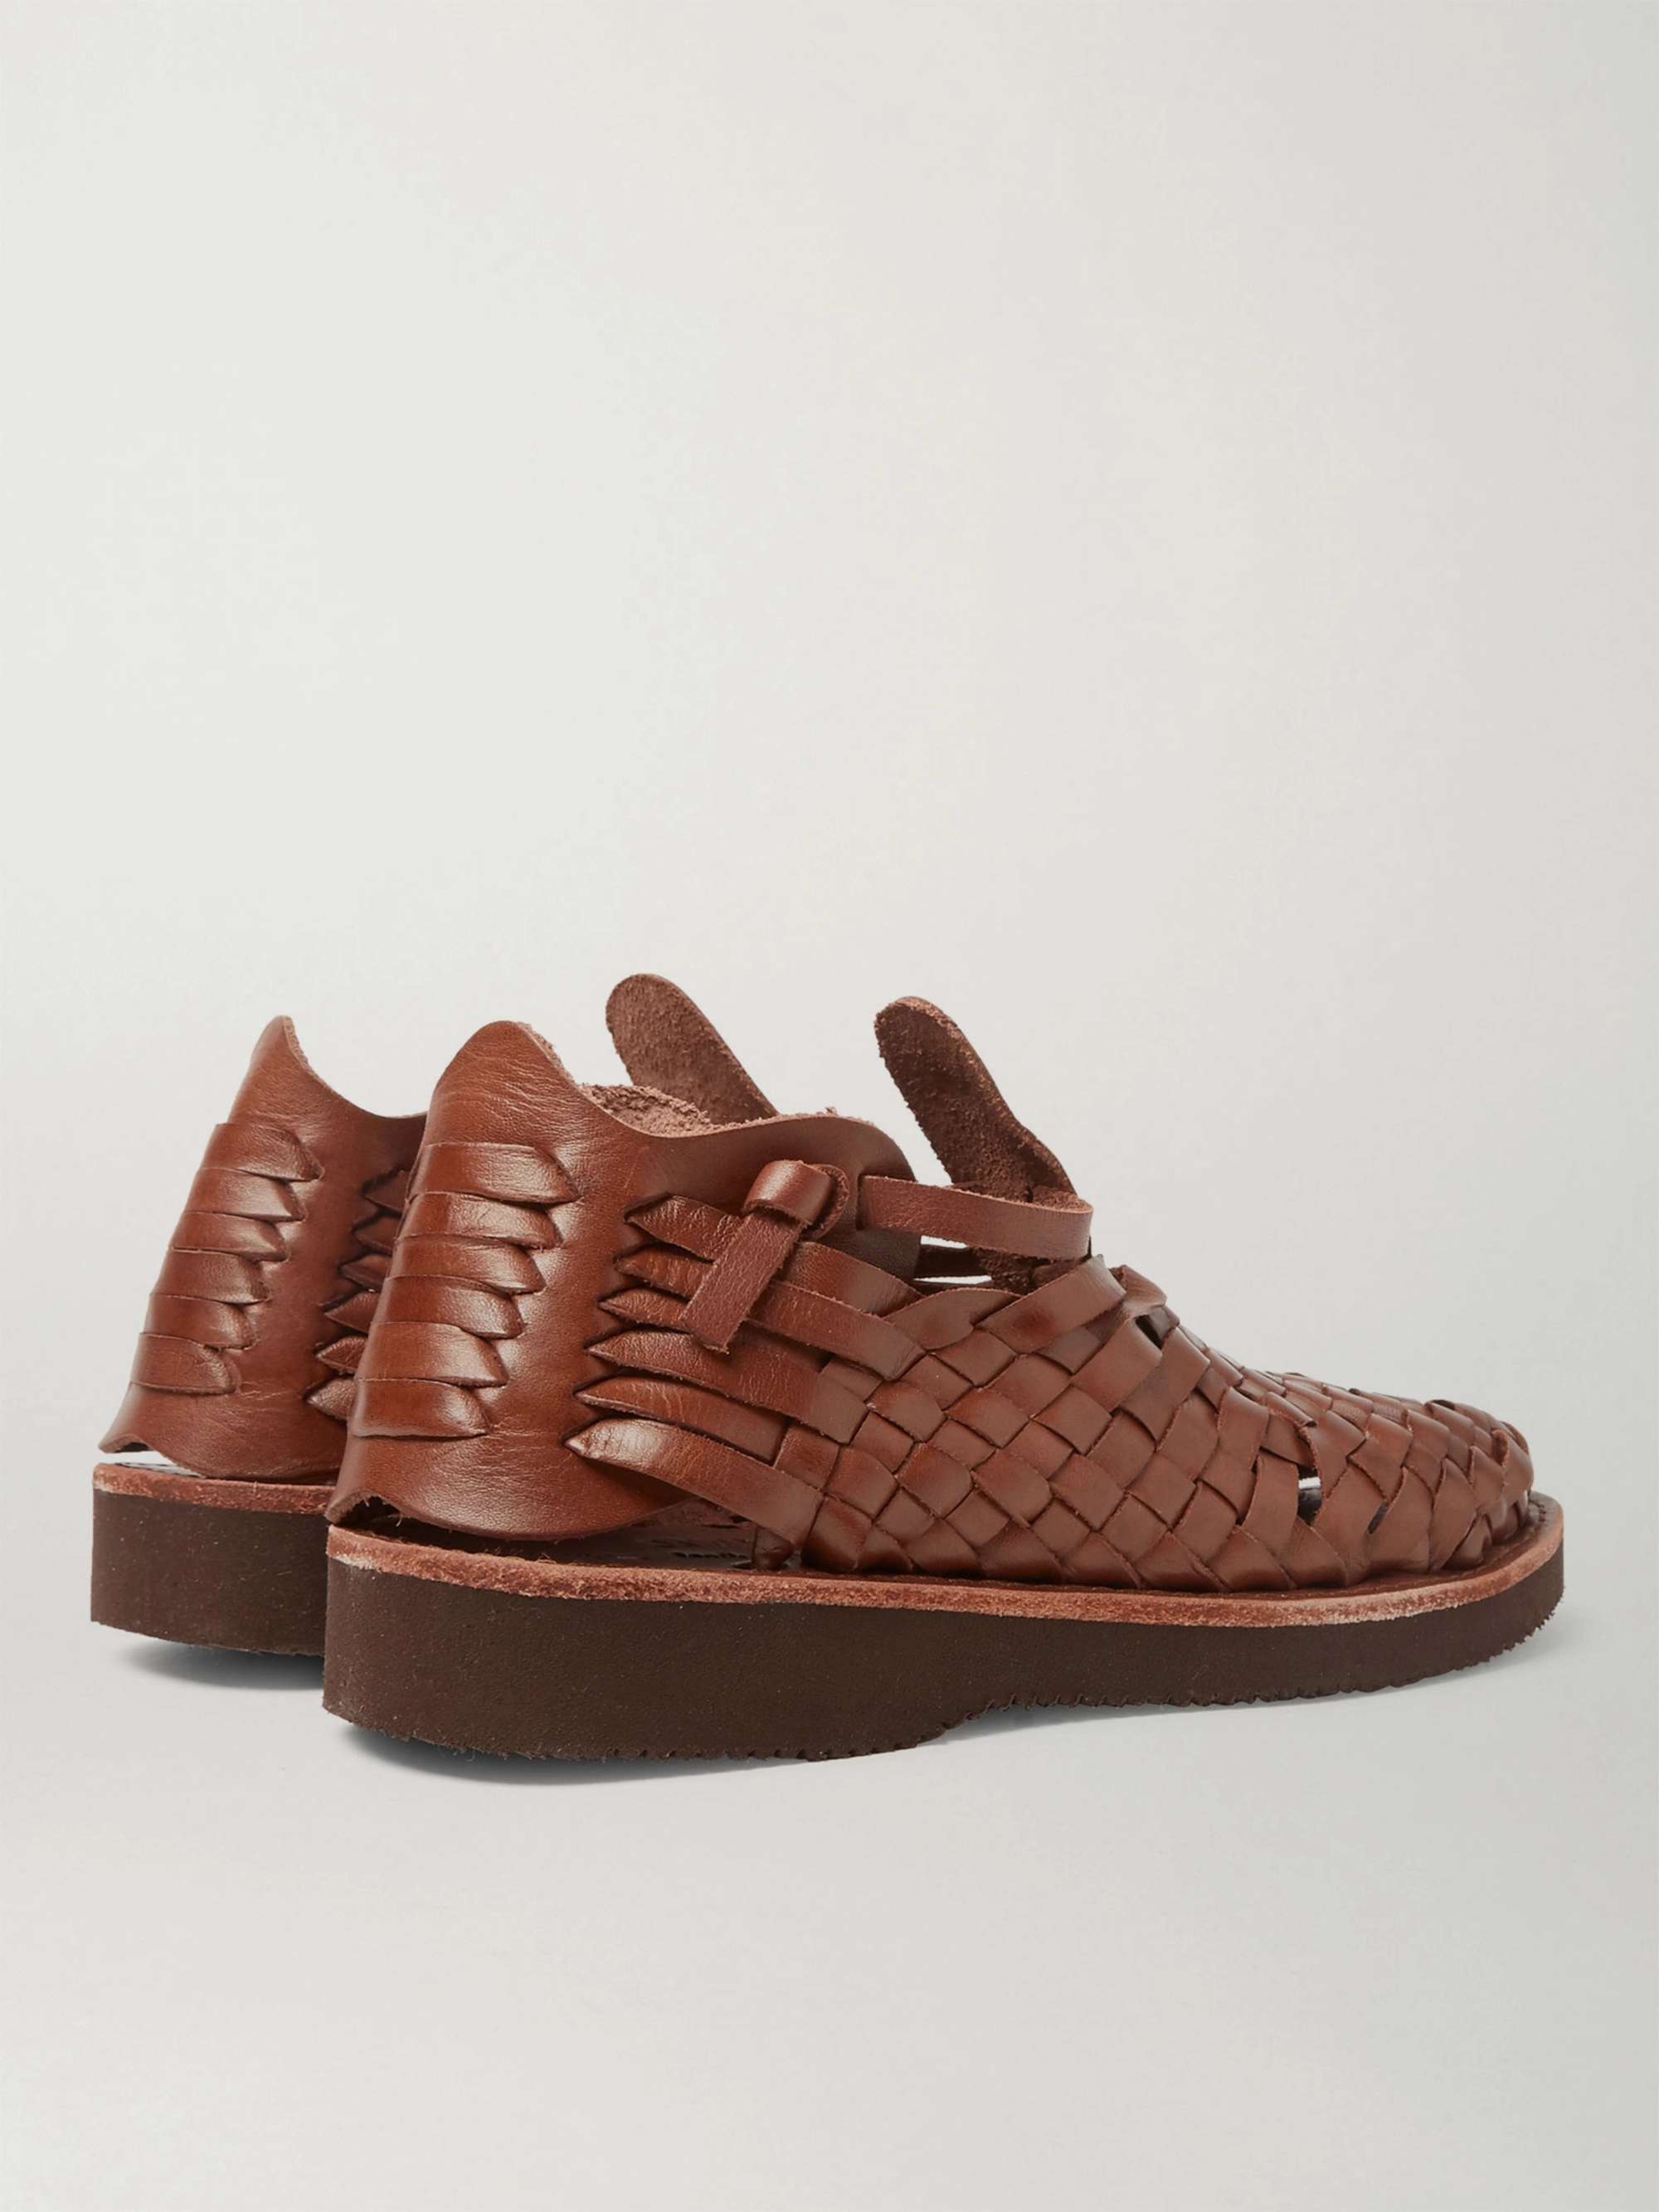 YUKETEN Crus Woven Leather Sandals